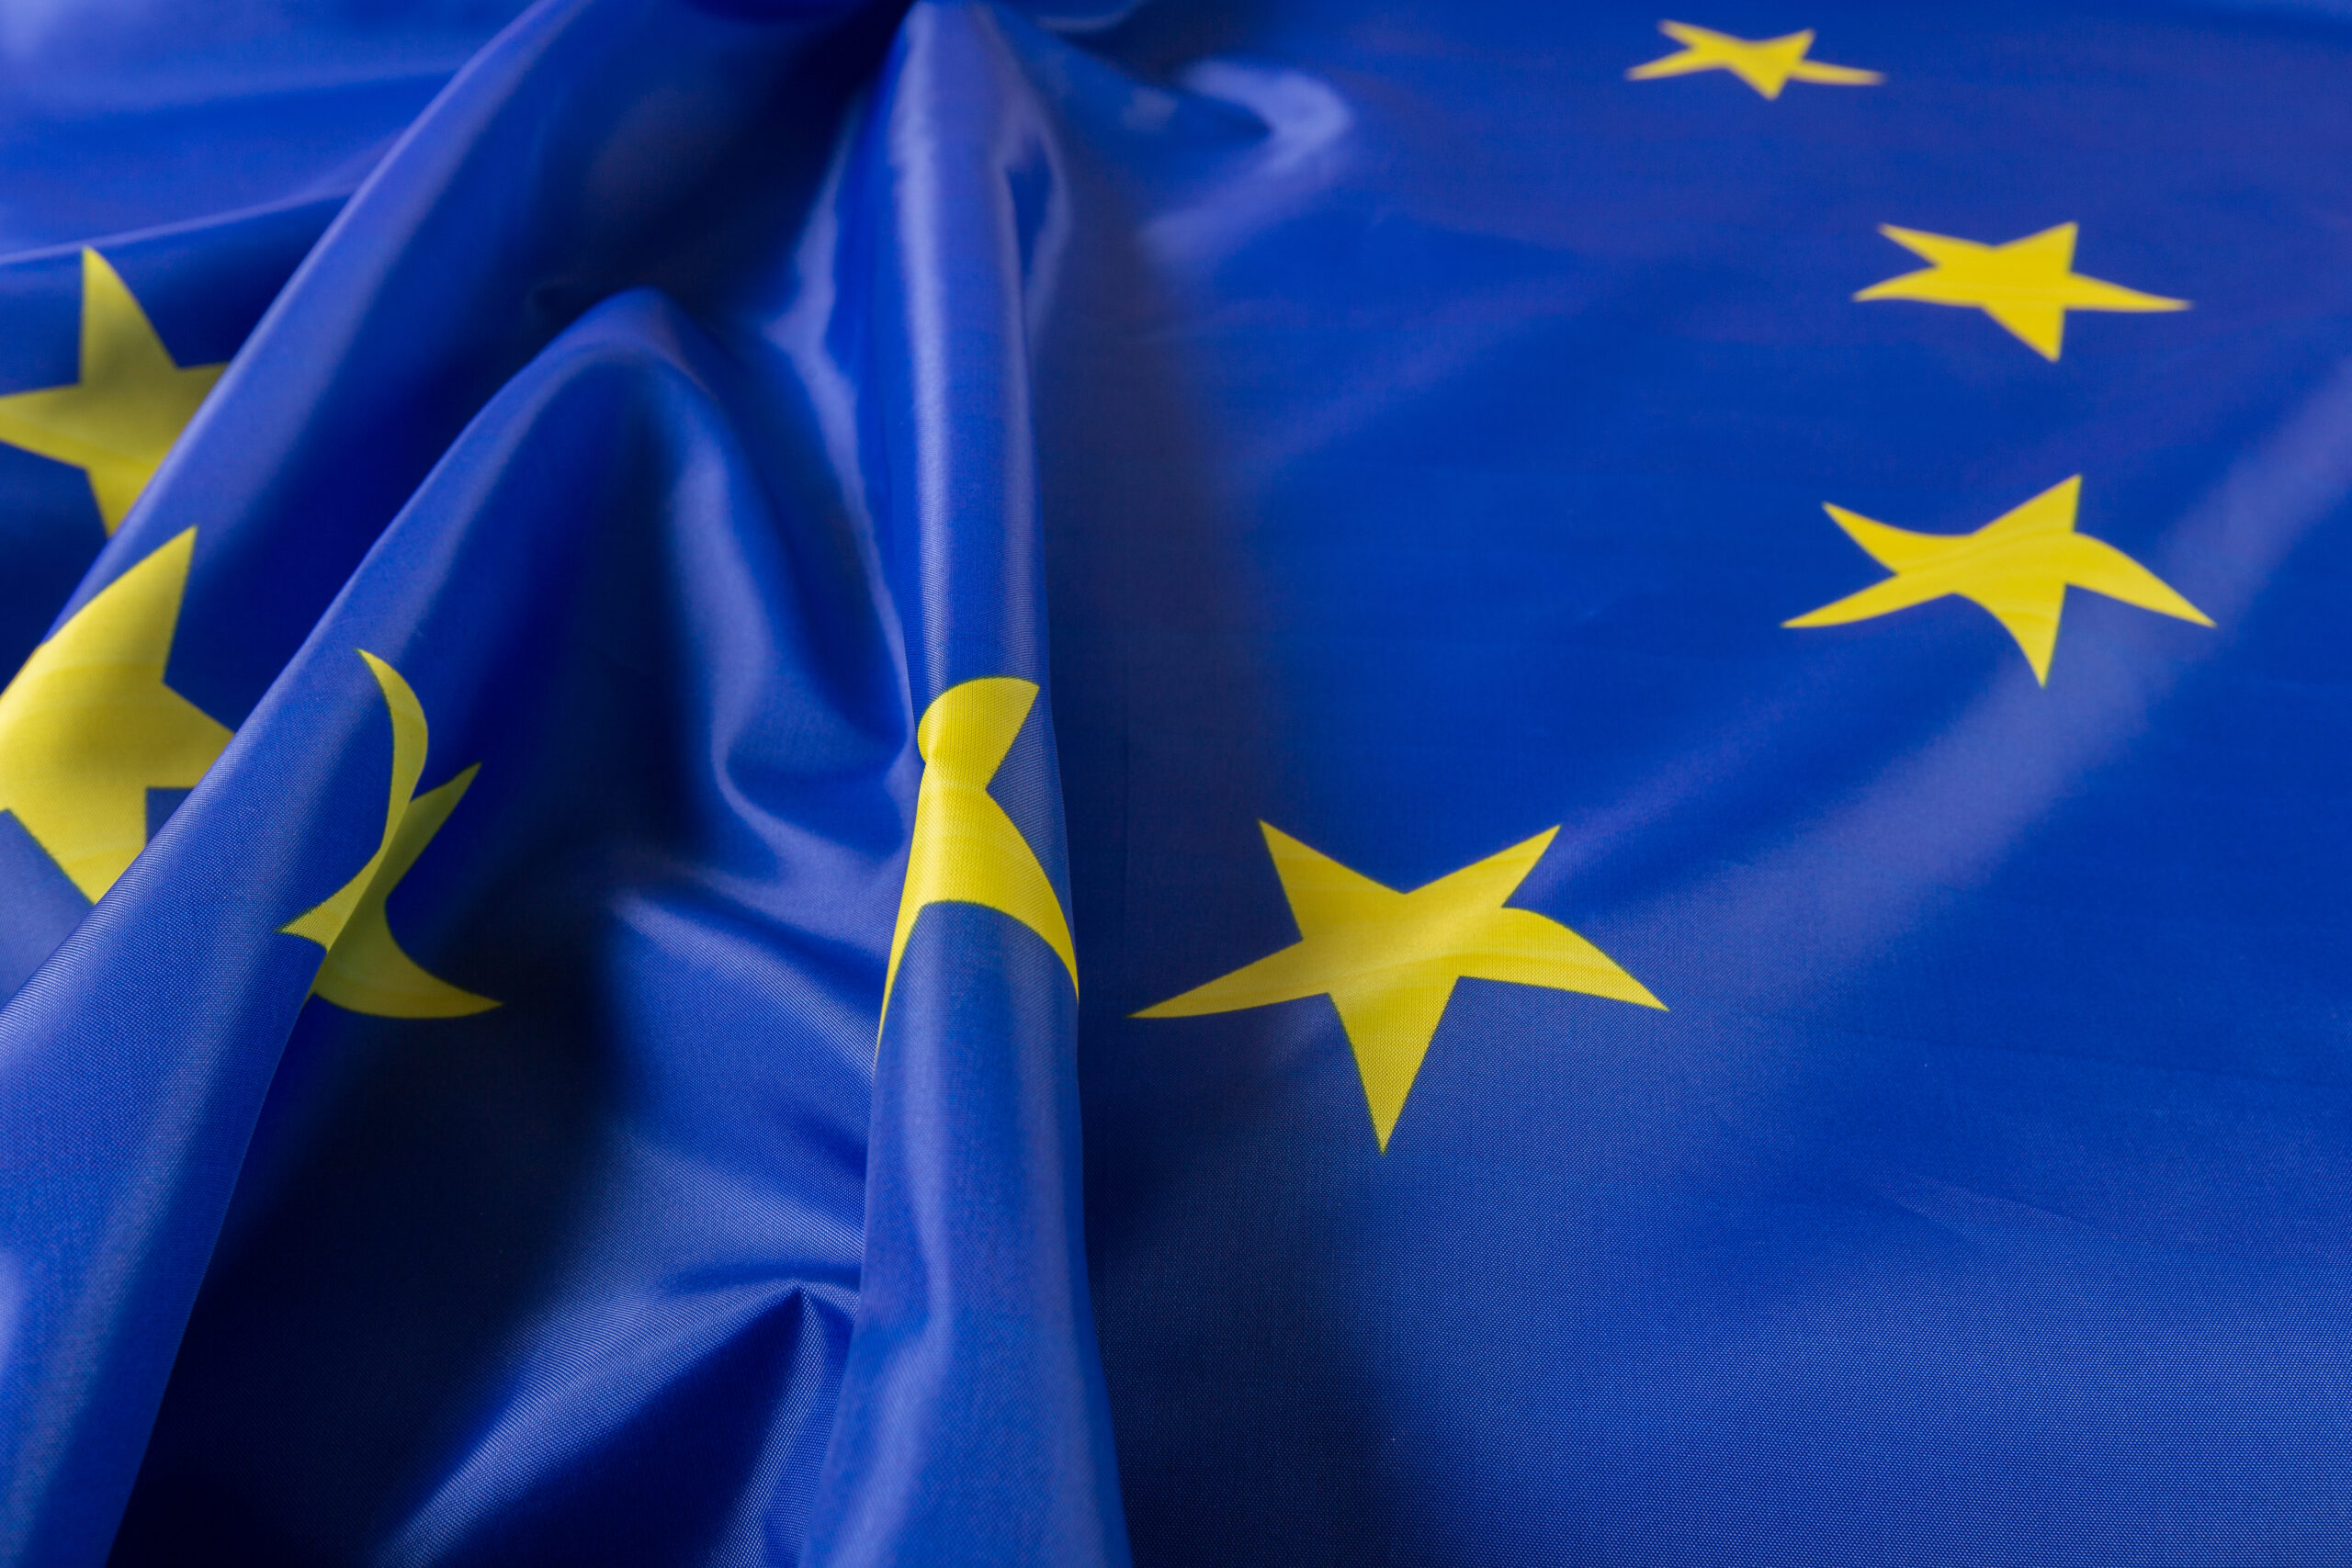 flaga unii europejskiej scaled - Fixed establishment w przypadku toll manufacturingu – orzeczenie TSUE